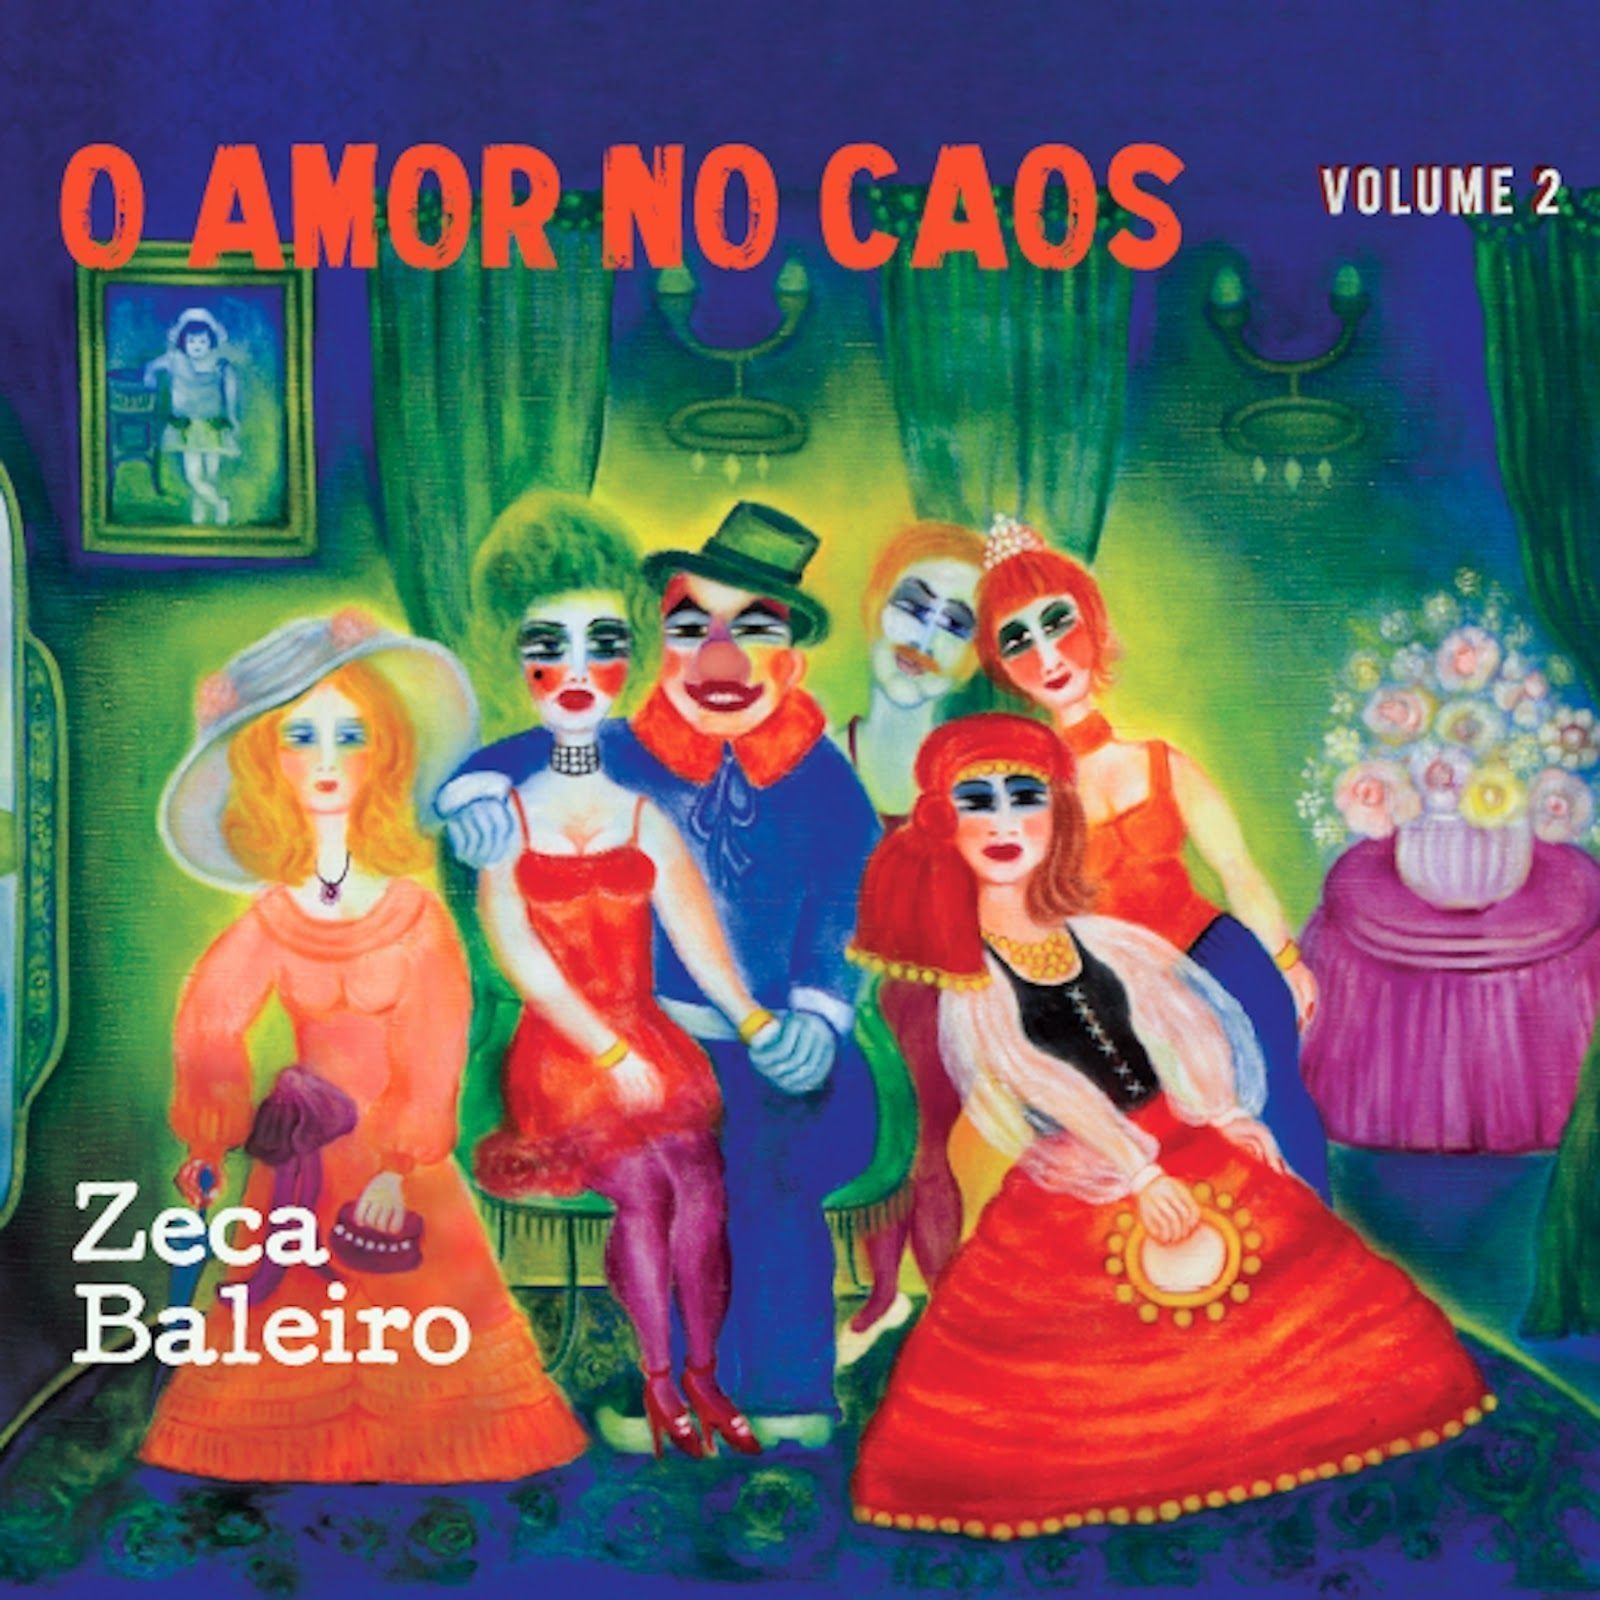 Imagem do álbum O Amor No Caos, Vol. 2 do(a) artista Zeca Baleiro